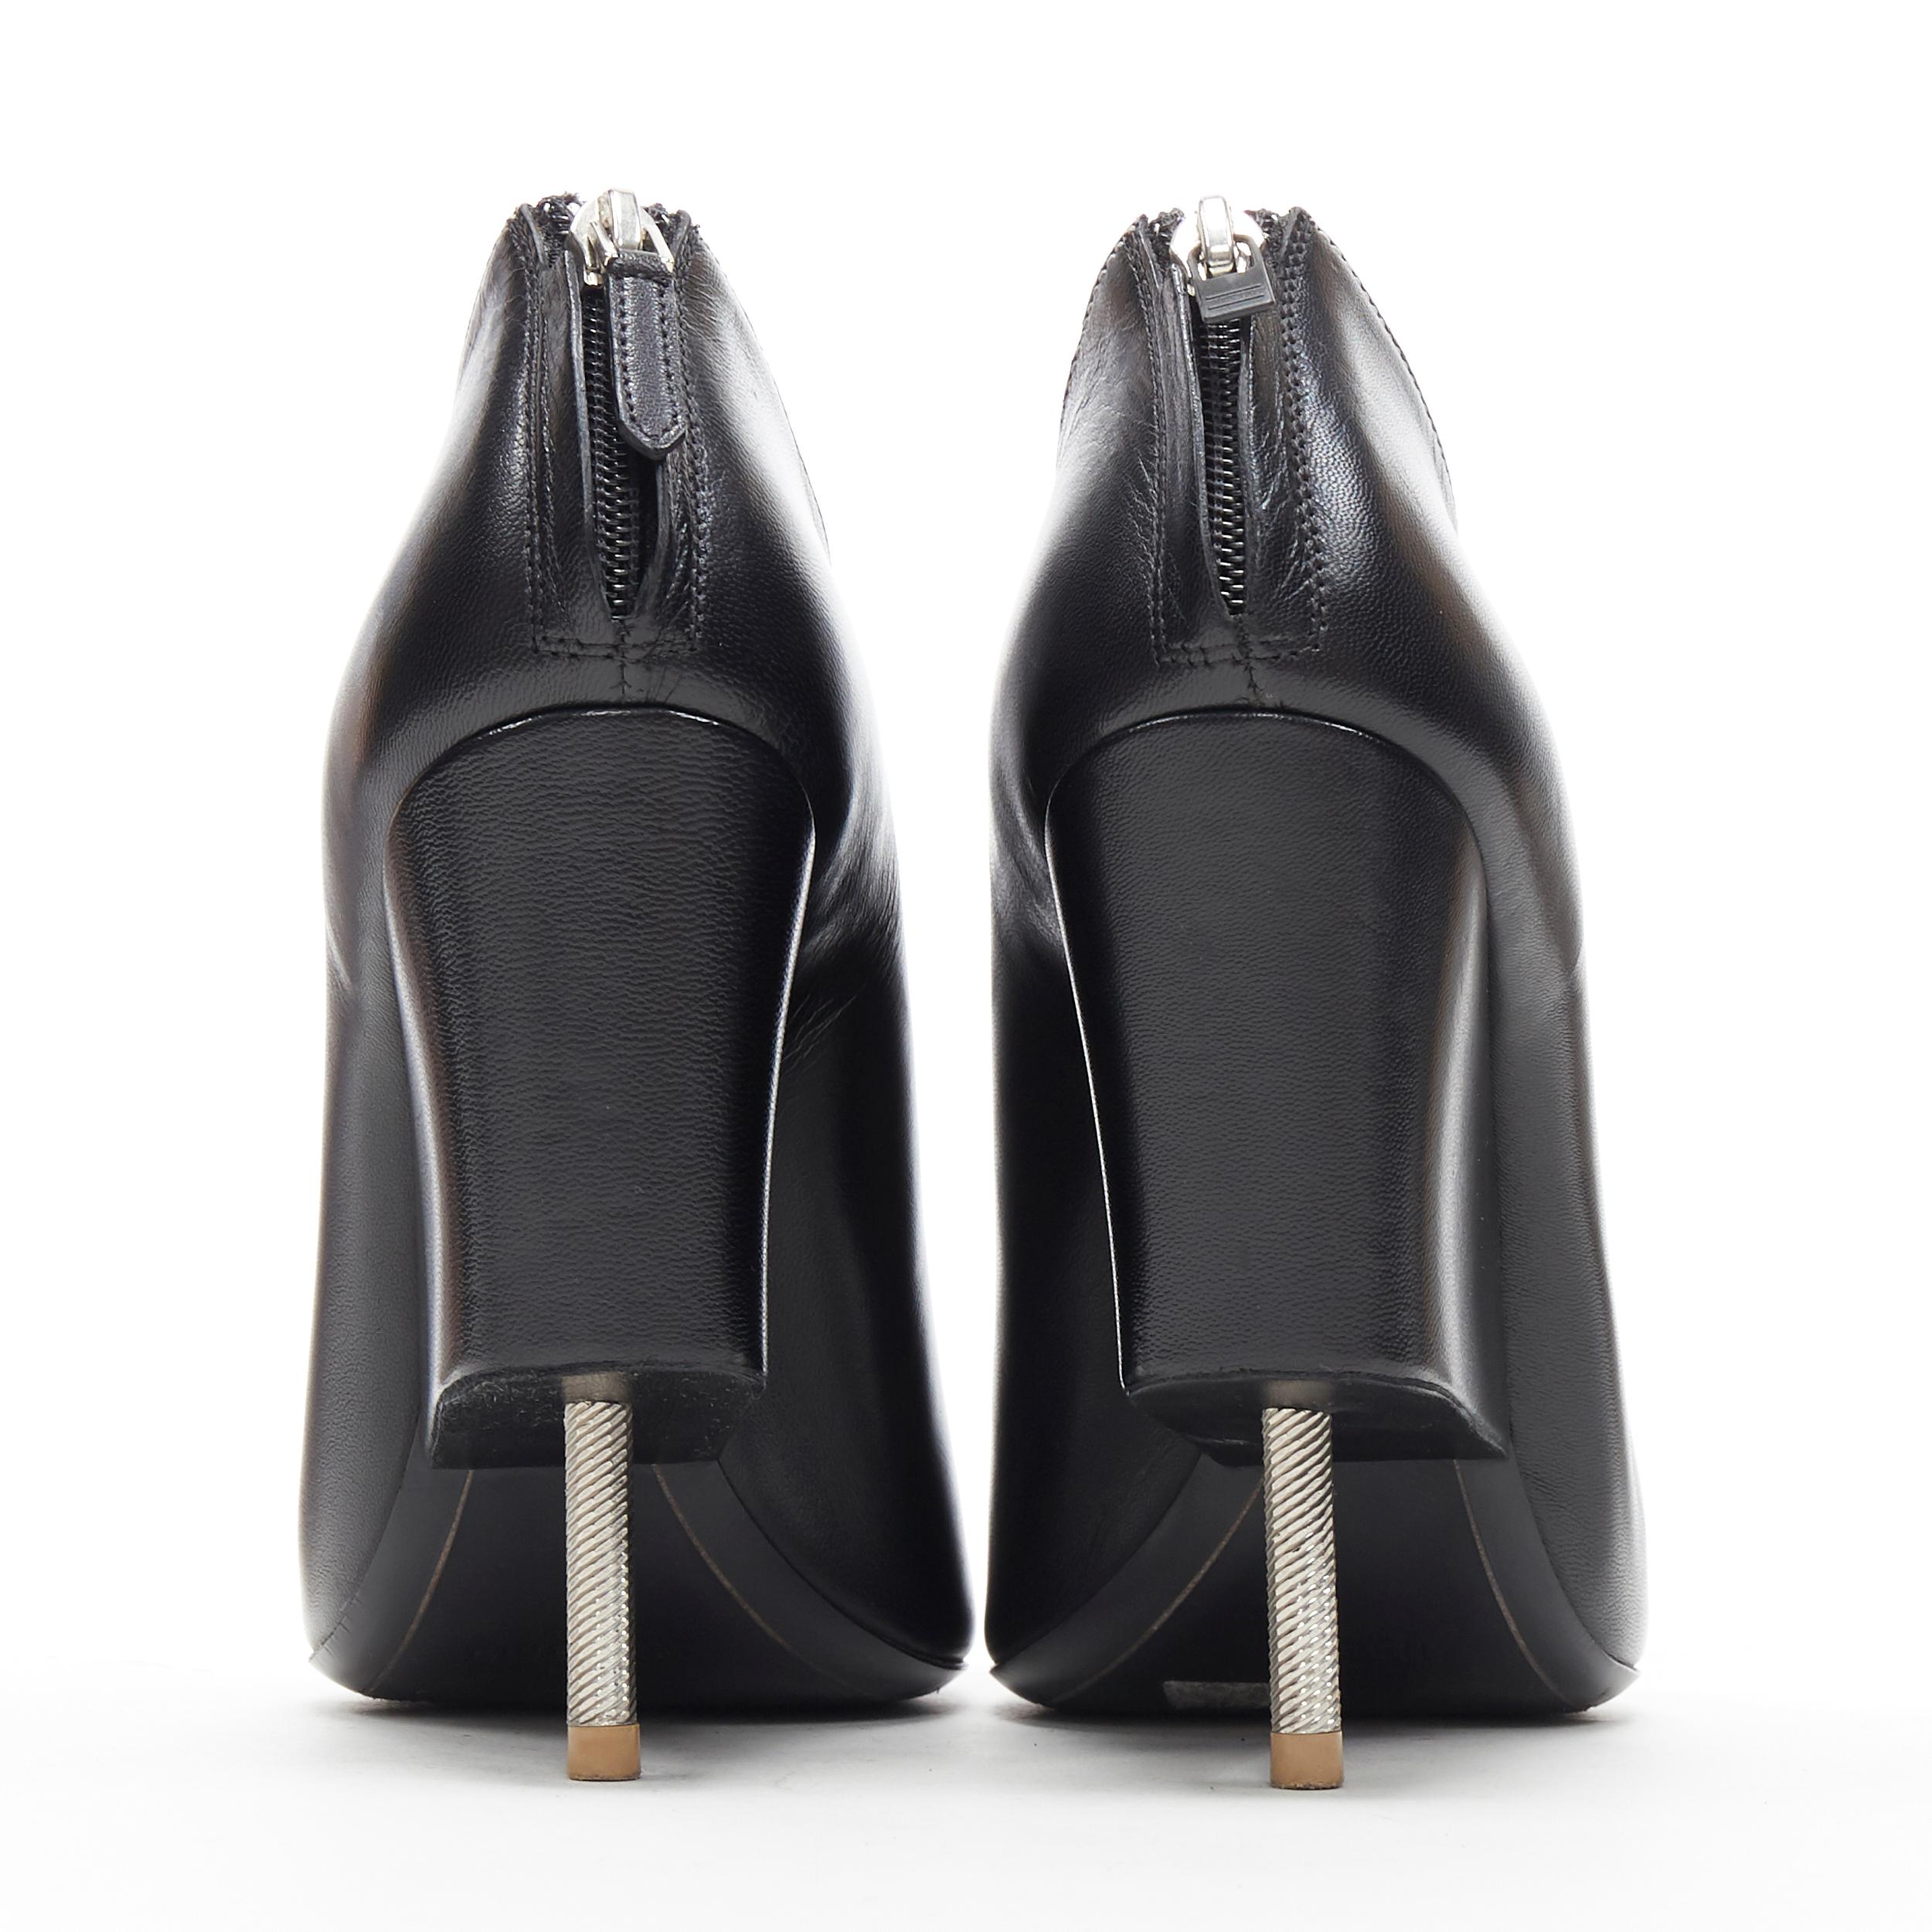 black tie up bootie heels